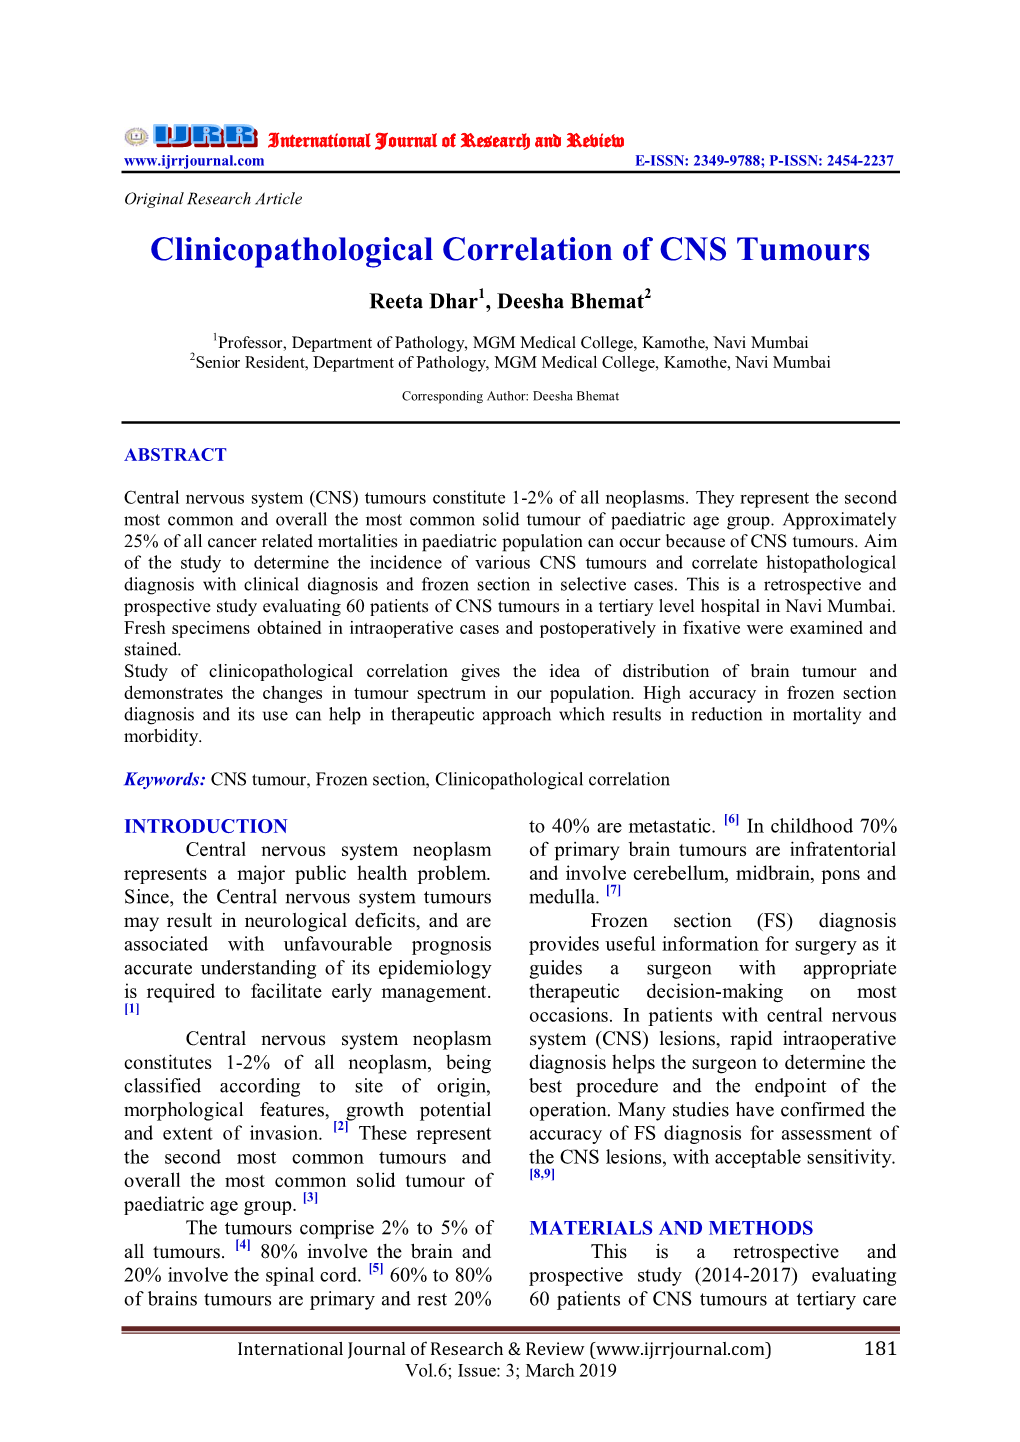 Clinicopathological Correlation of CNS Tumours